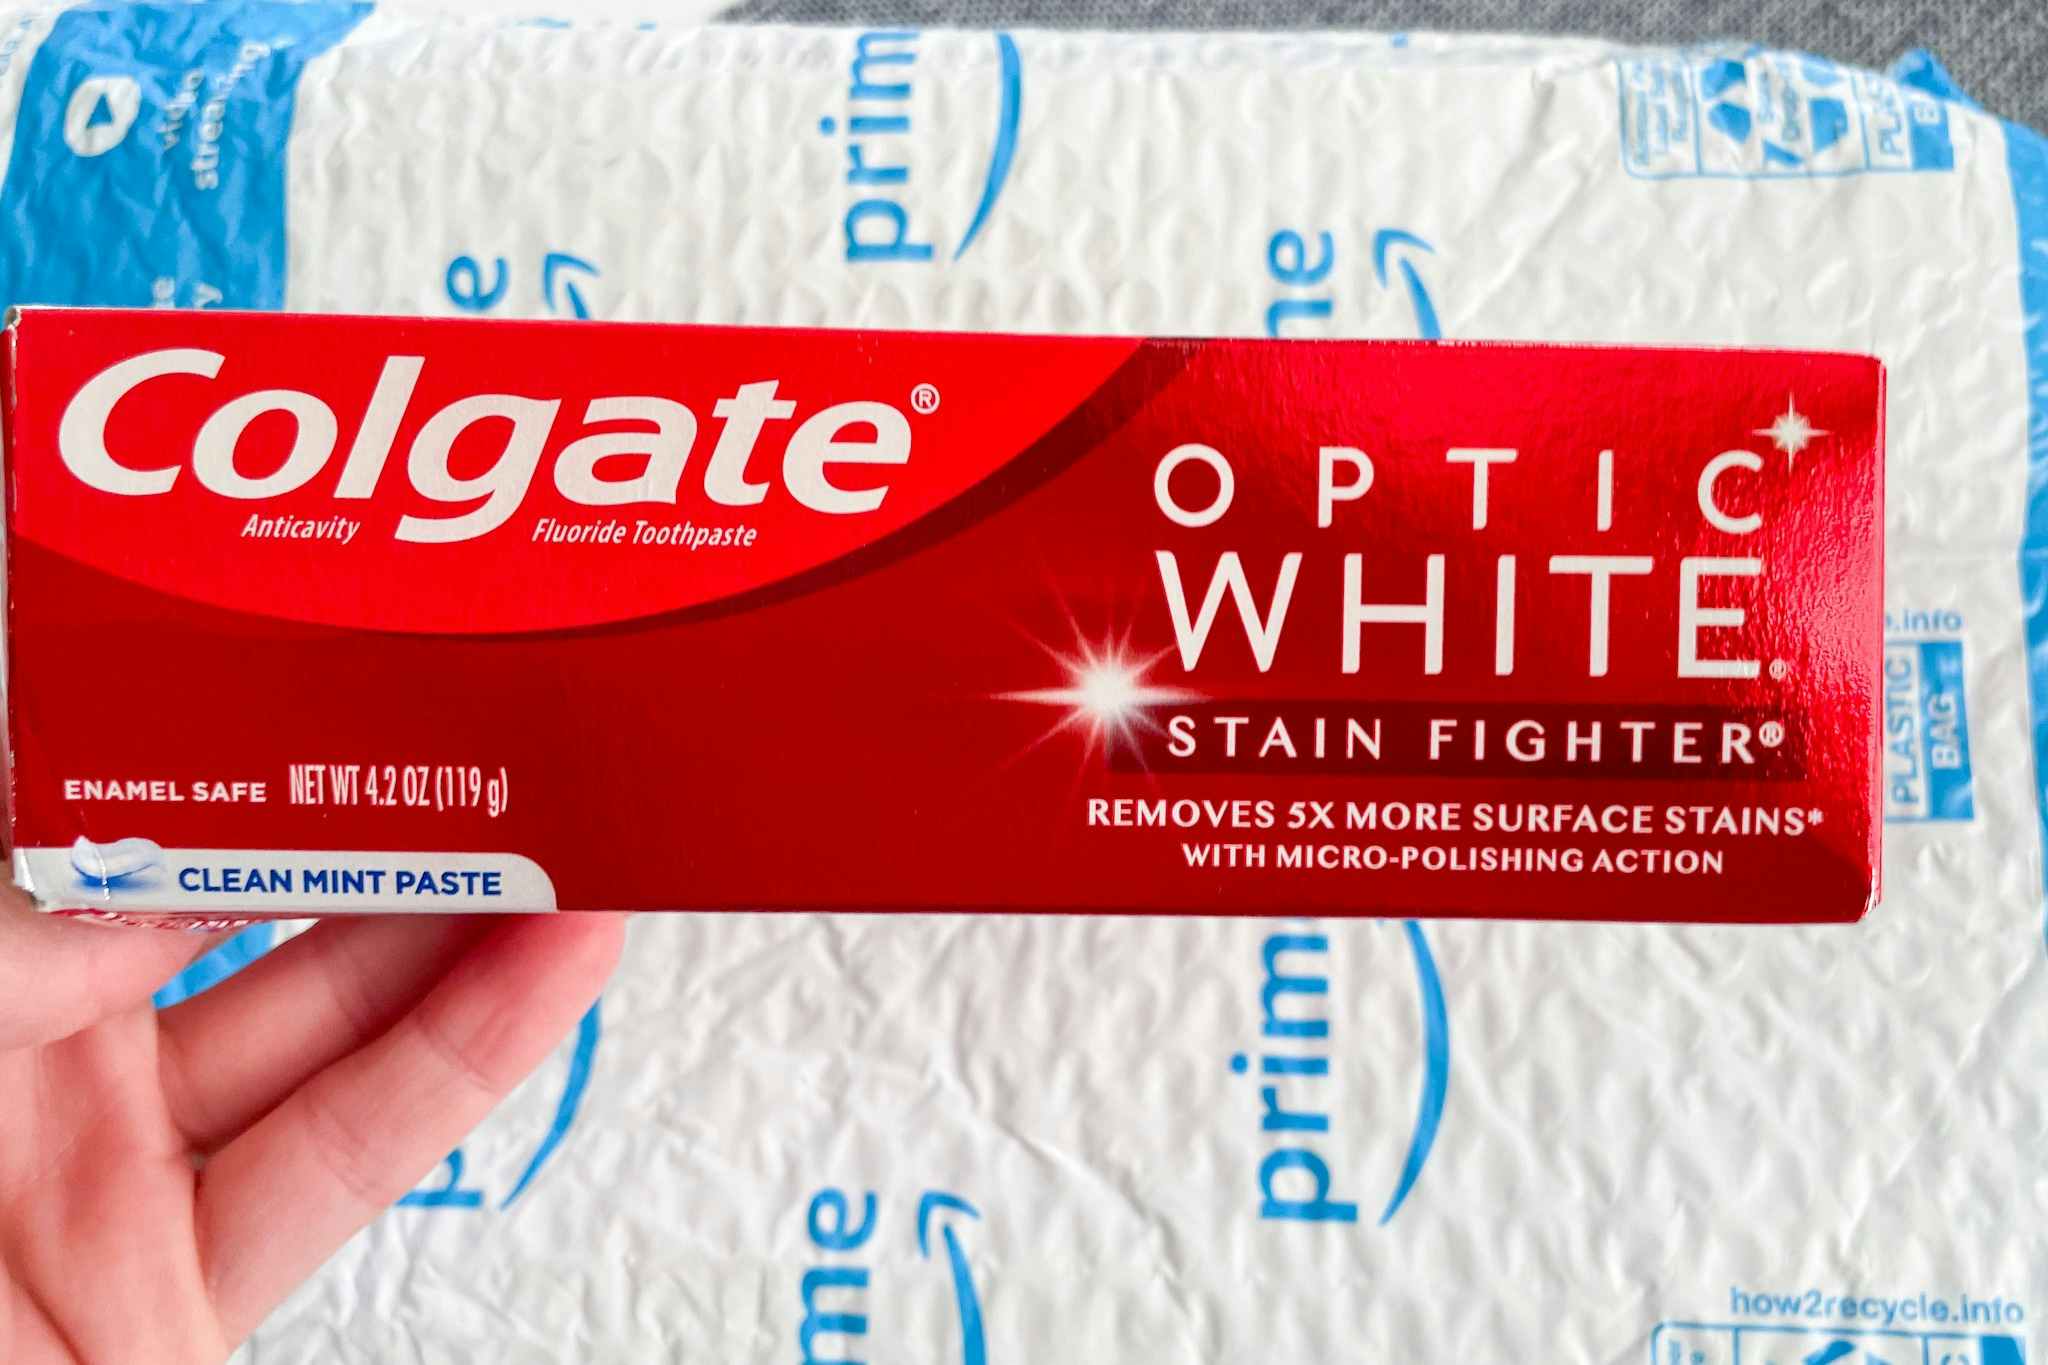 Colgate Optic White Toothpaste, as Low as $2.12 on Amazon